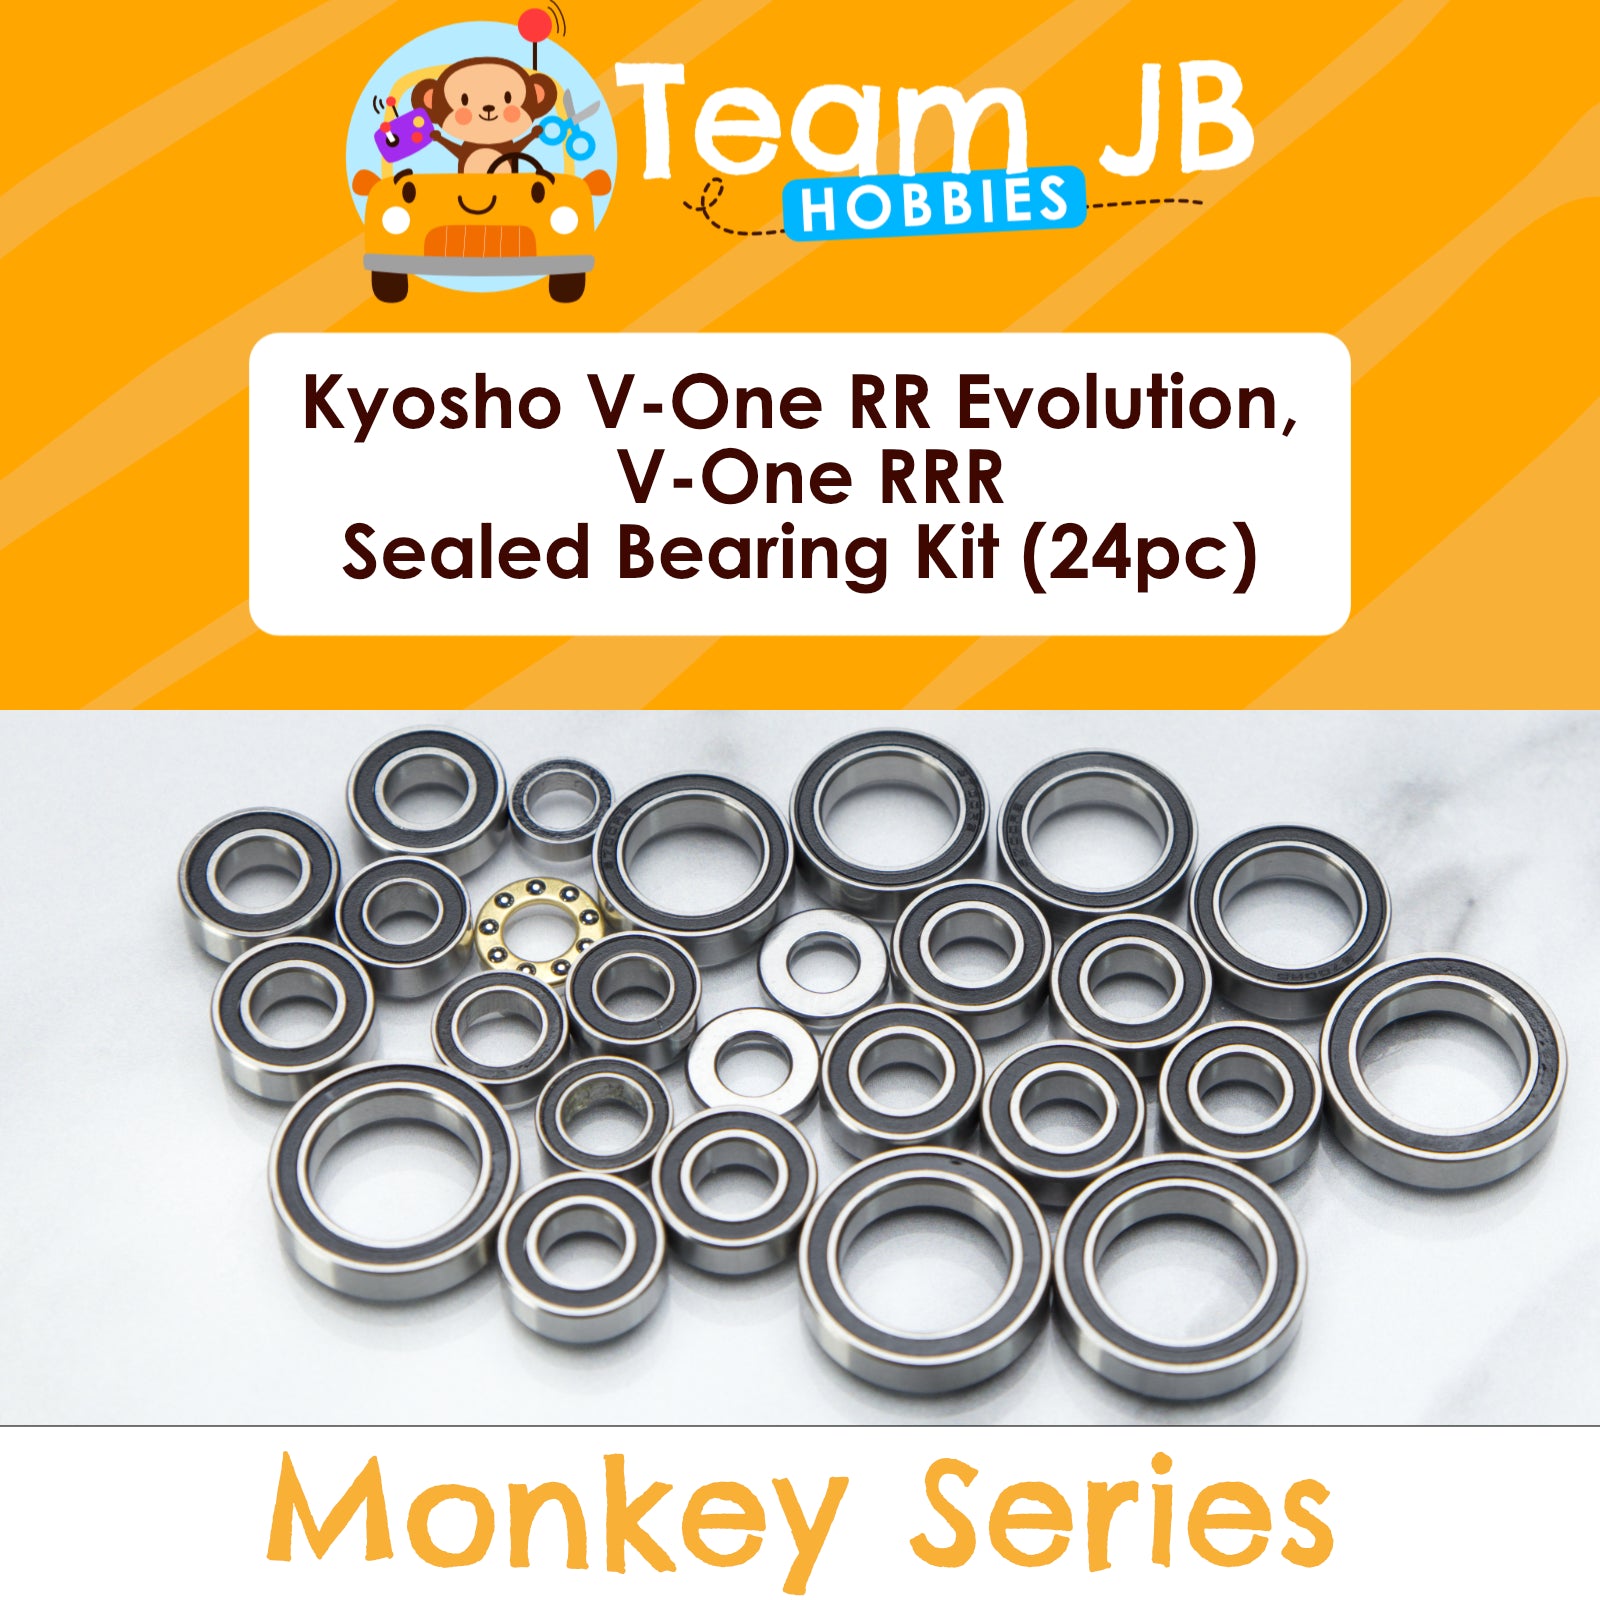 Kyosho V-One RR Evolution, V-One RRR - Sealed Bearing Kit